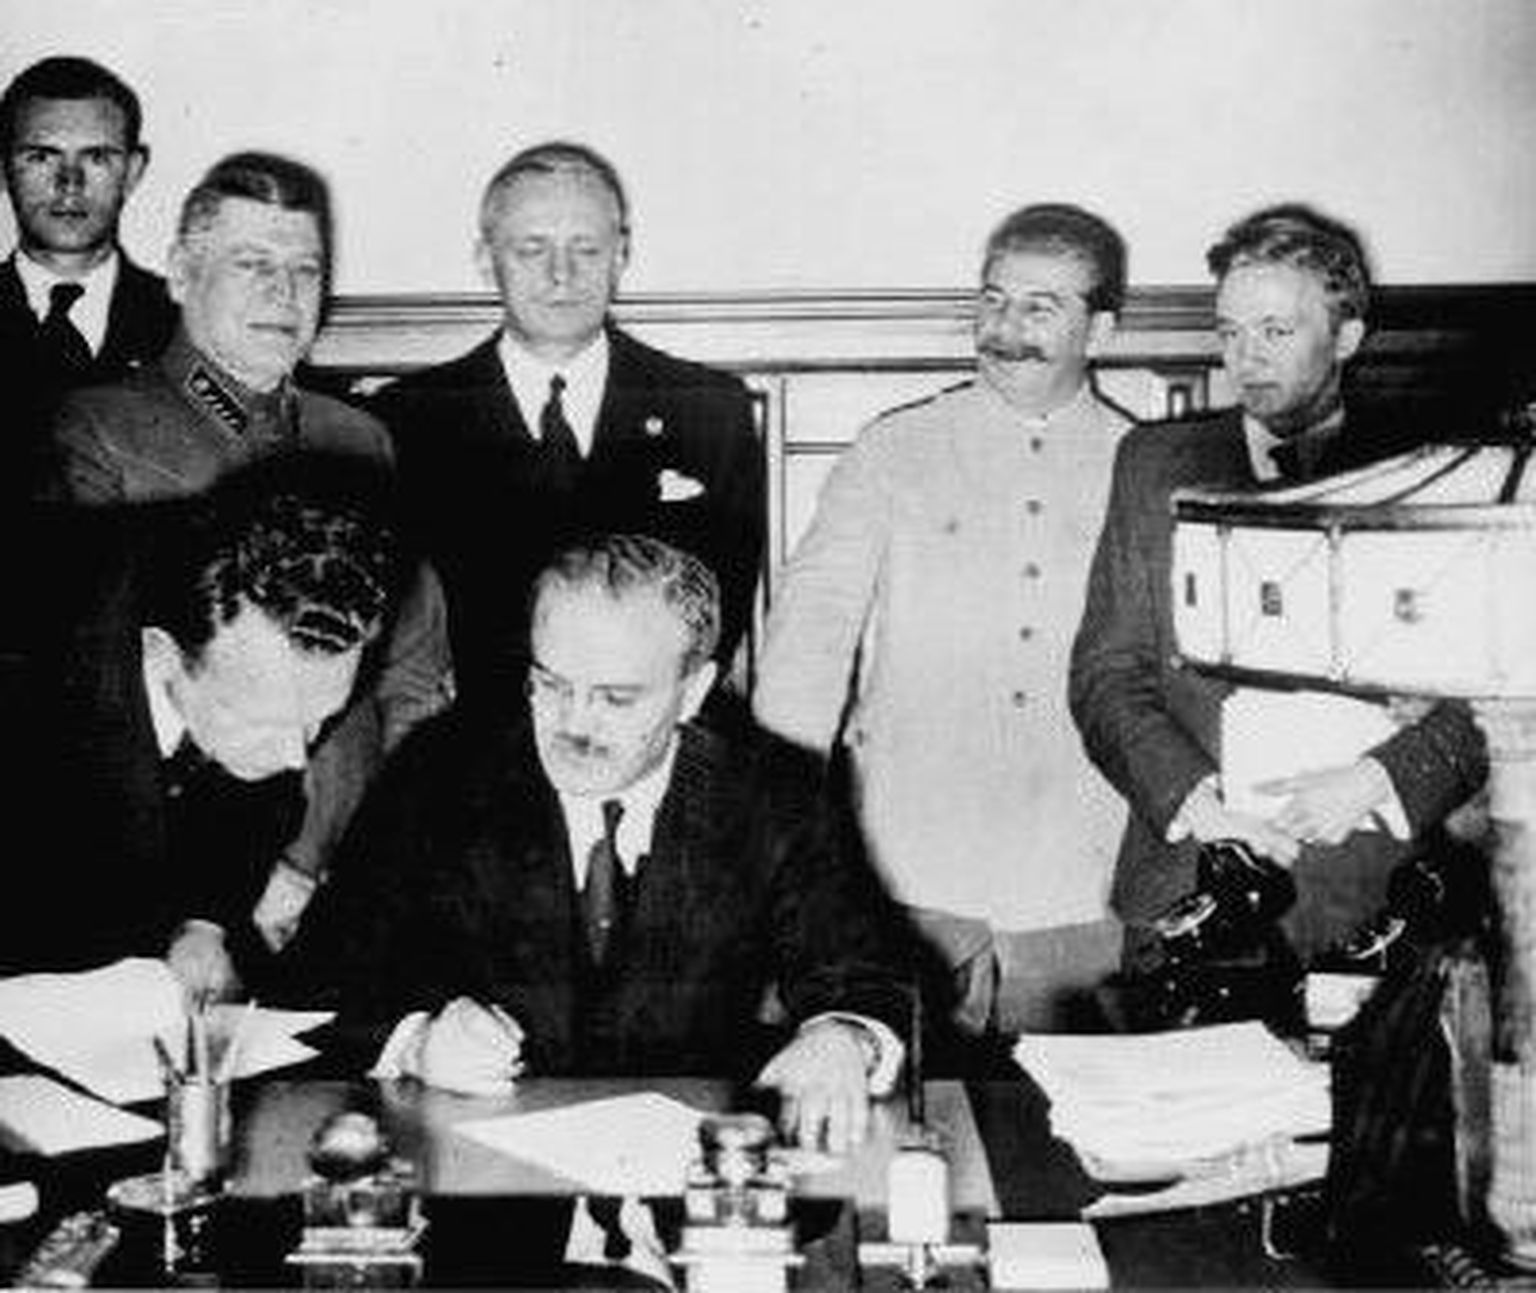 Molotovi-Ribbentropi pakti allkirjastamine 23. augustil 1939. Molotov istub ees keskel, Ribbentrop seisab tema selja taga.